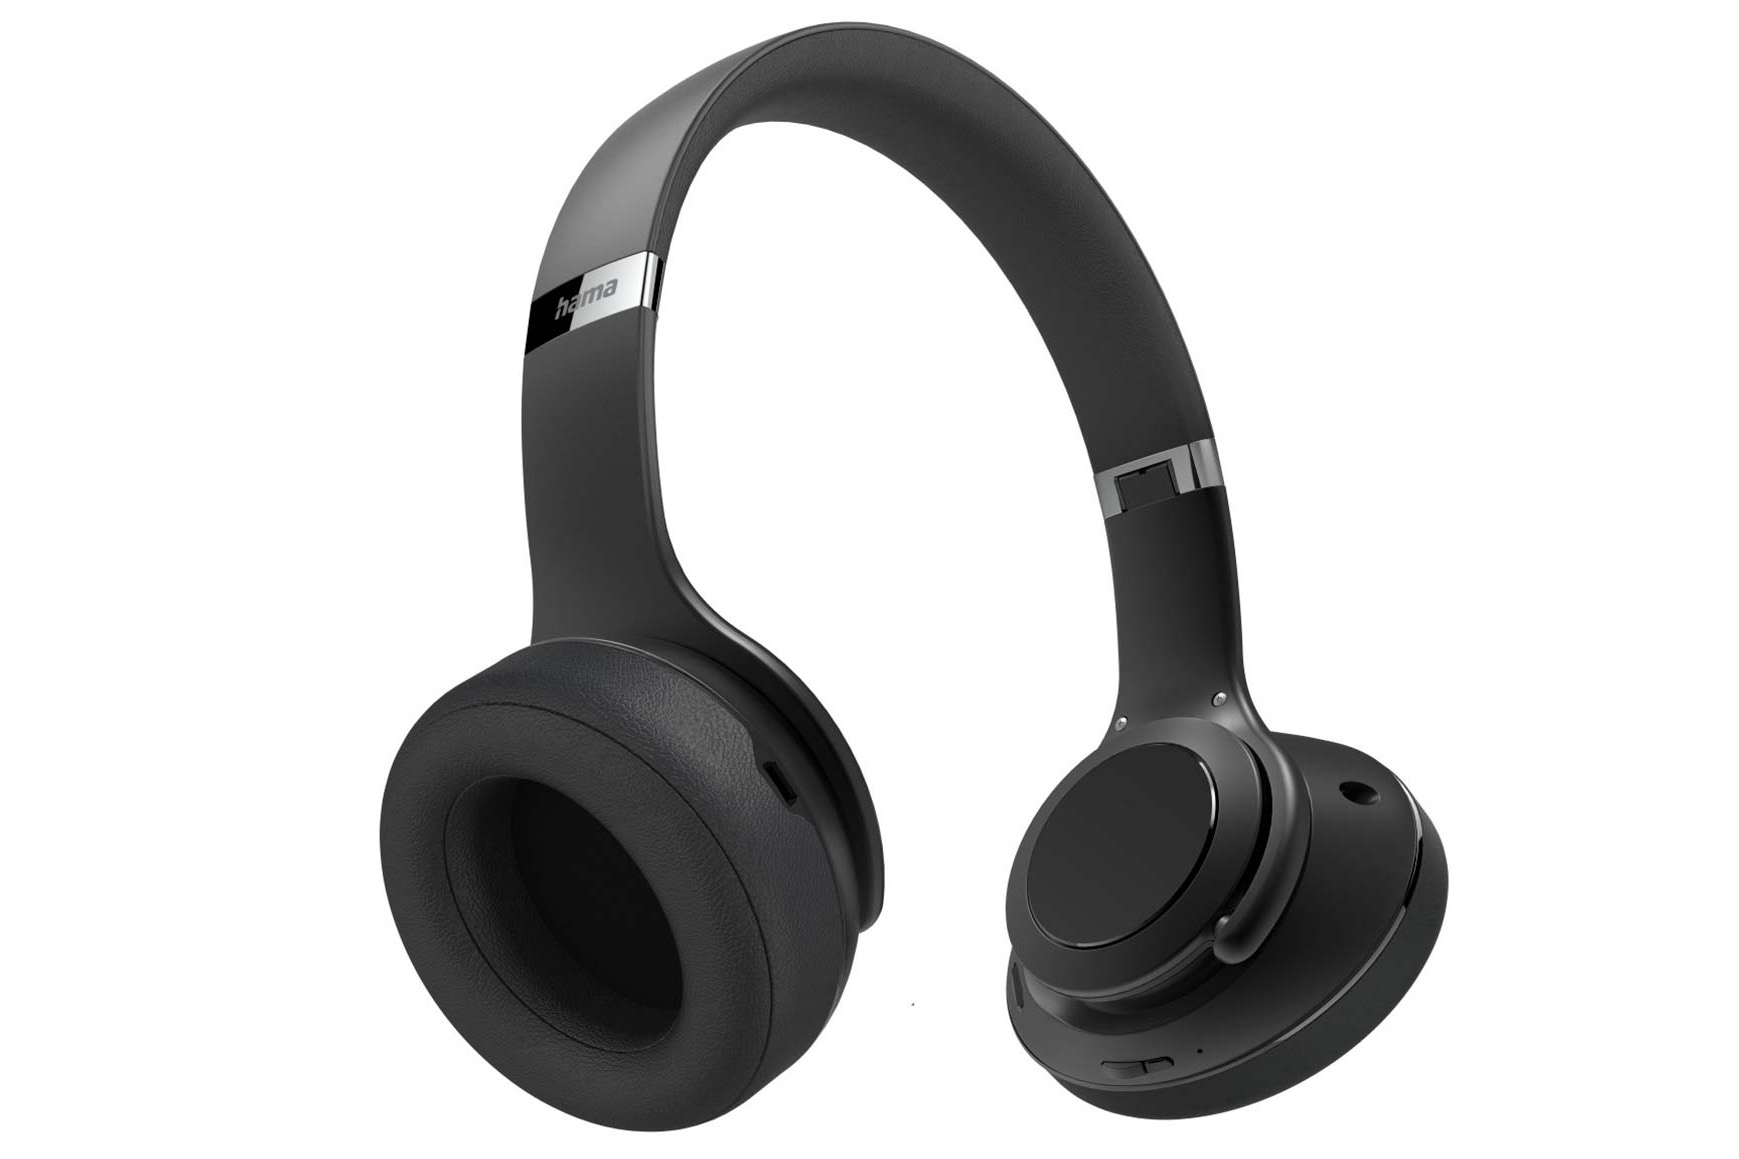 Produktbild des Bluetooth-Kopfhörers Passion Turn von Hama.